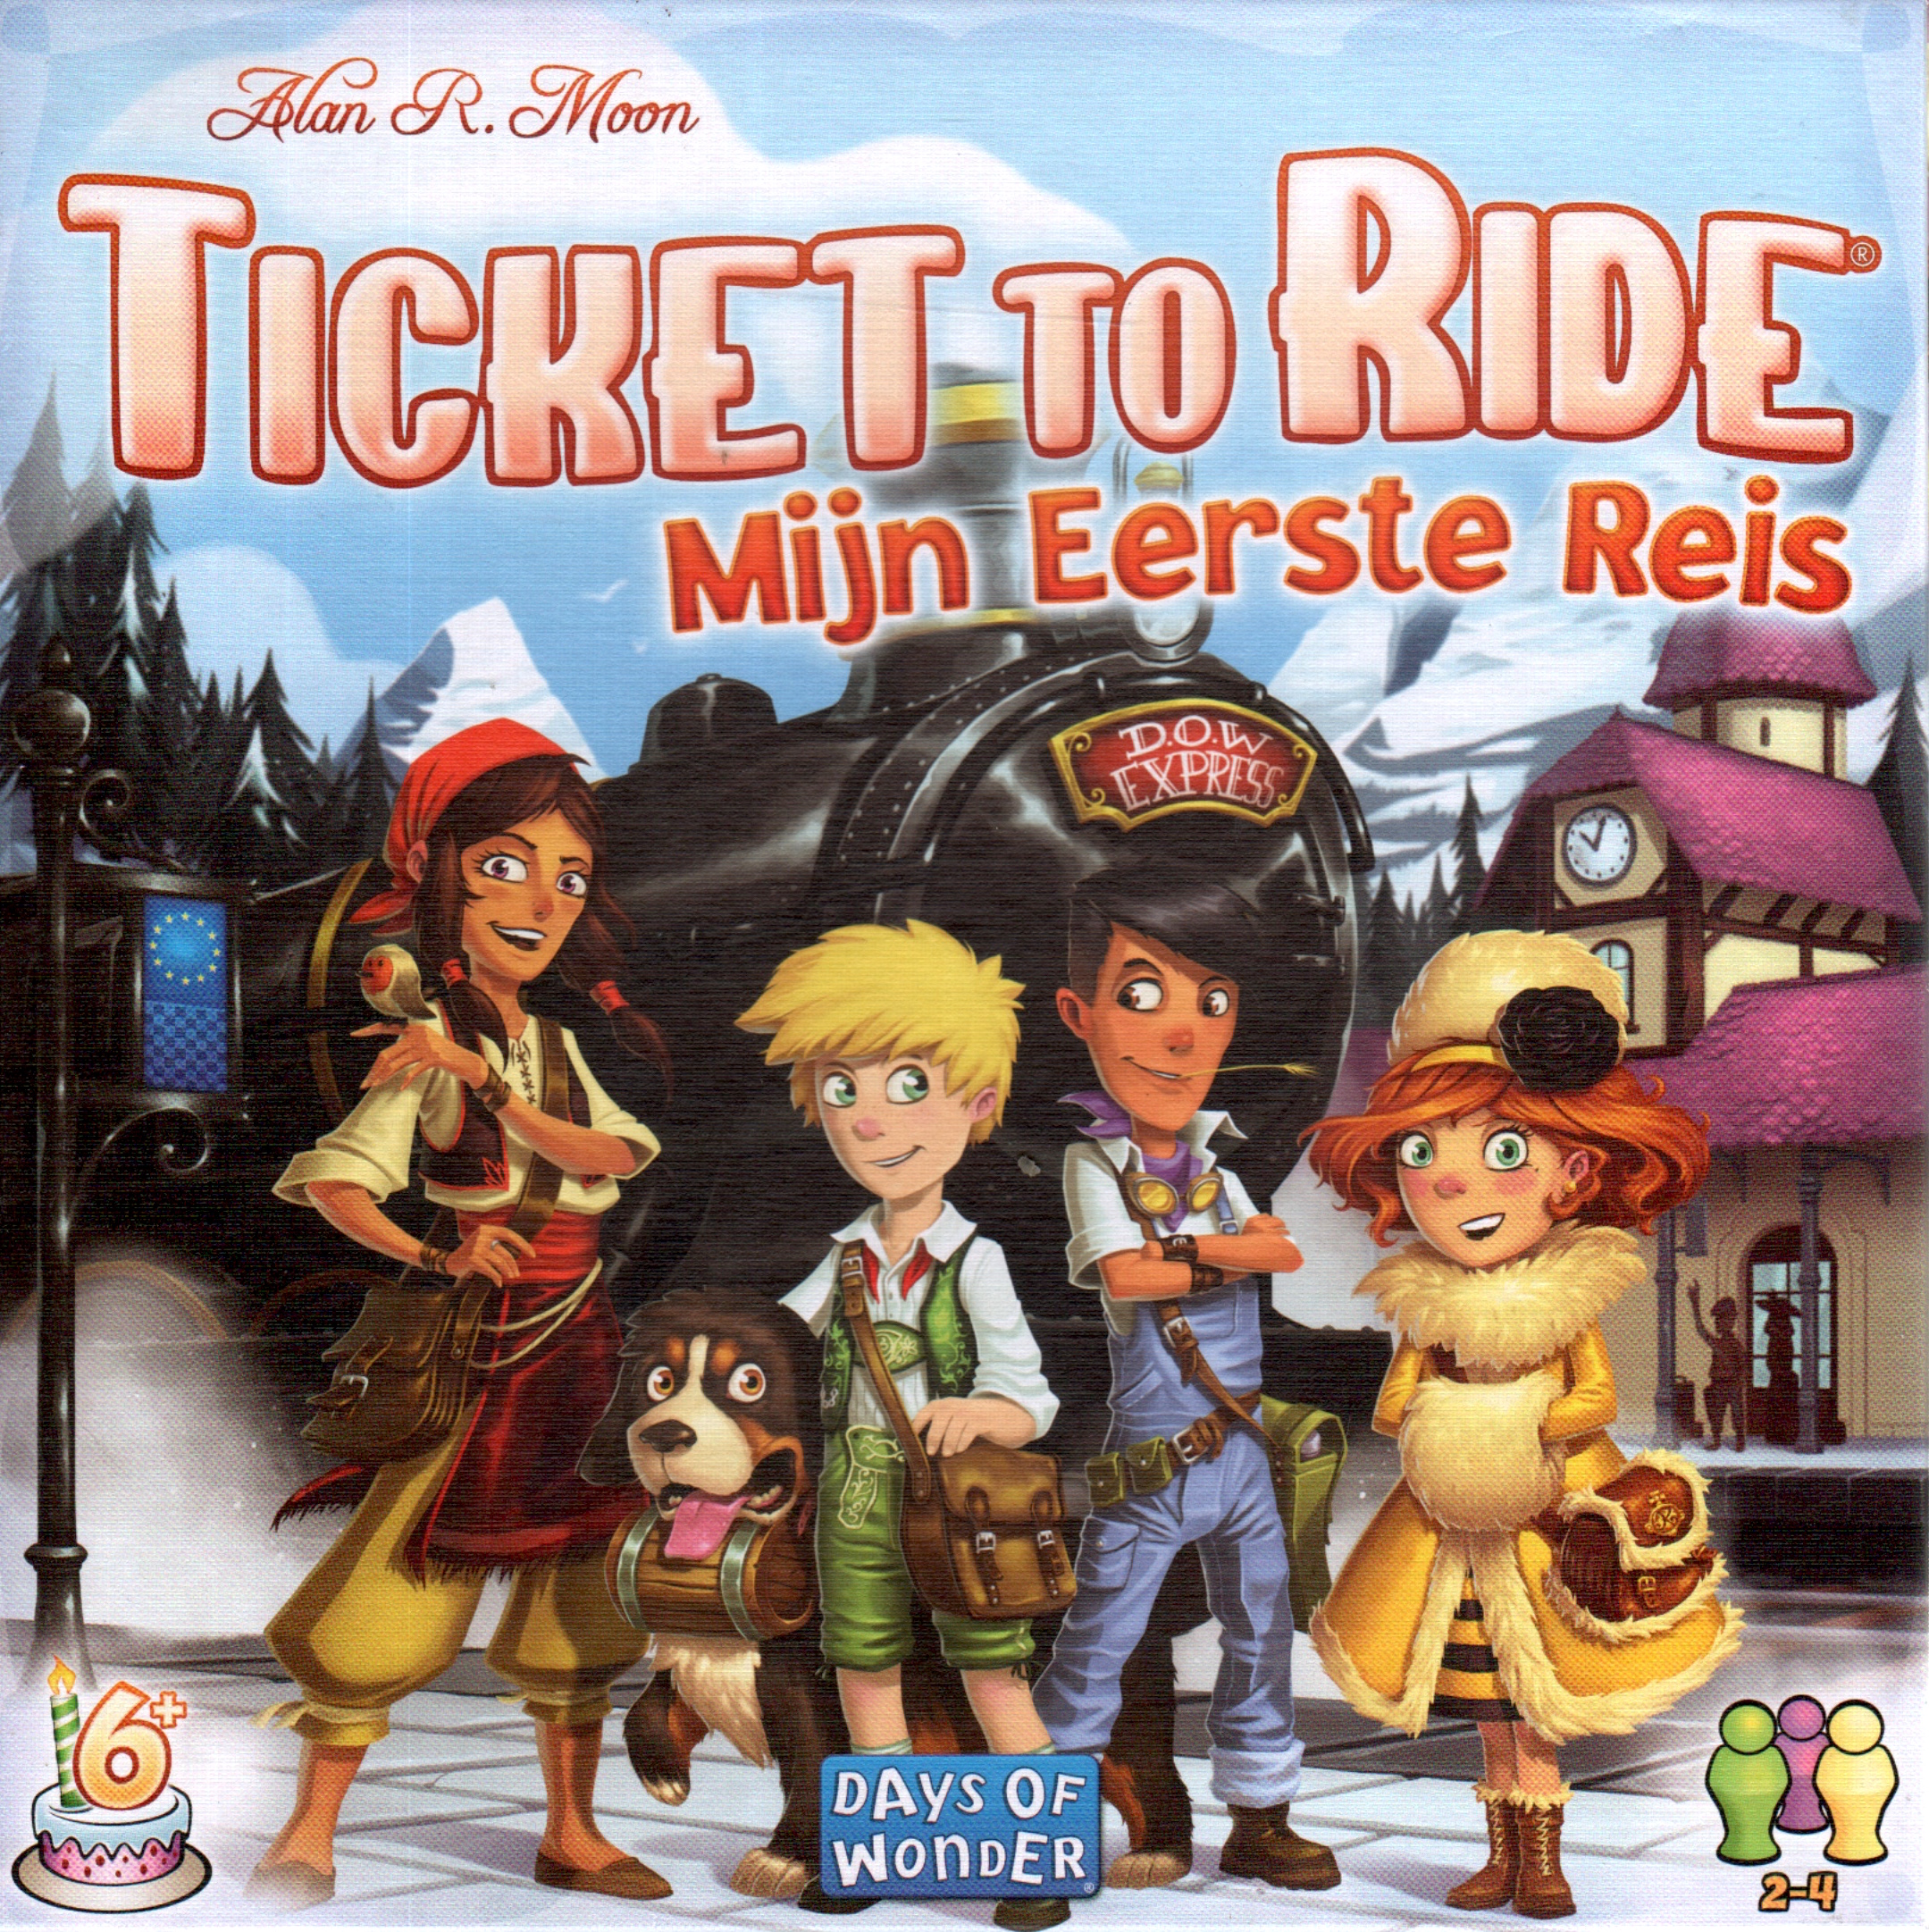 Ticket to Ride: Mijn eerste Reis